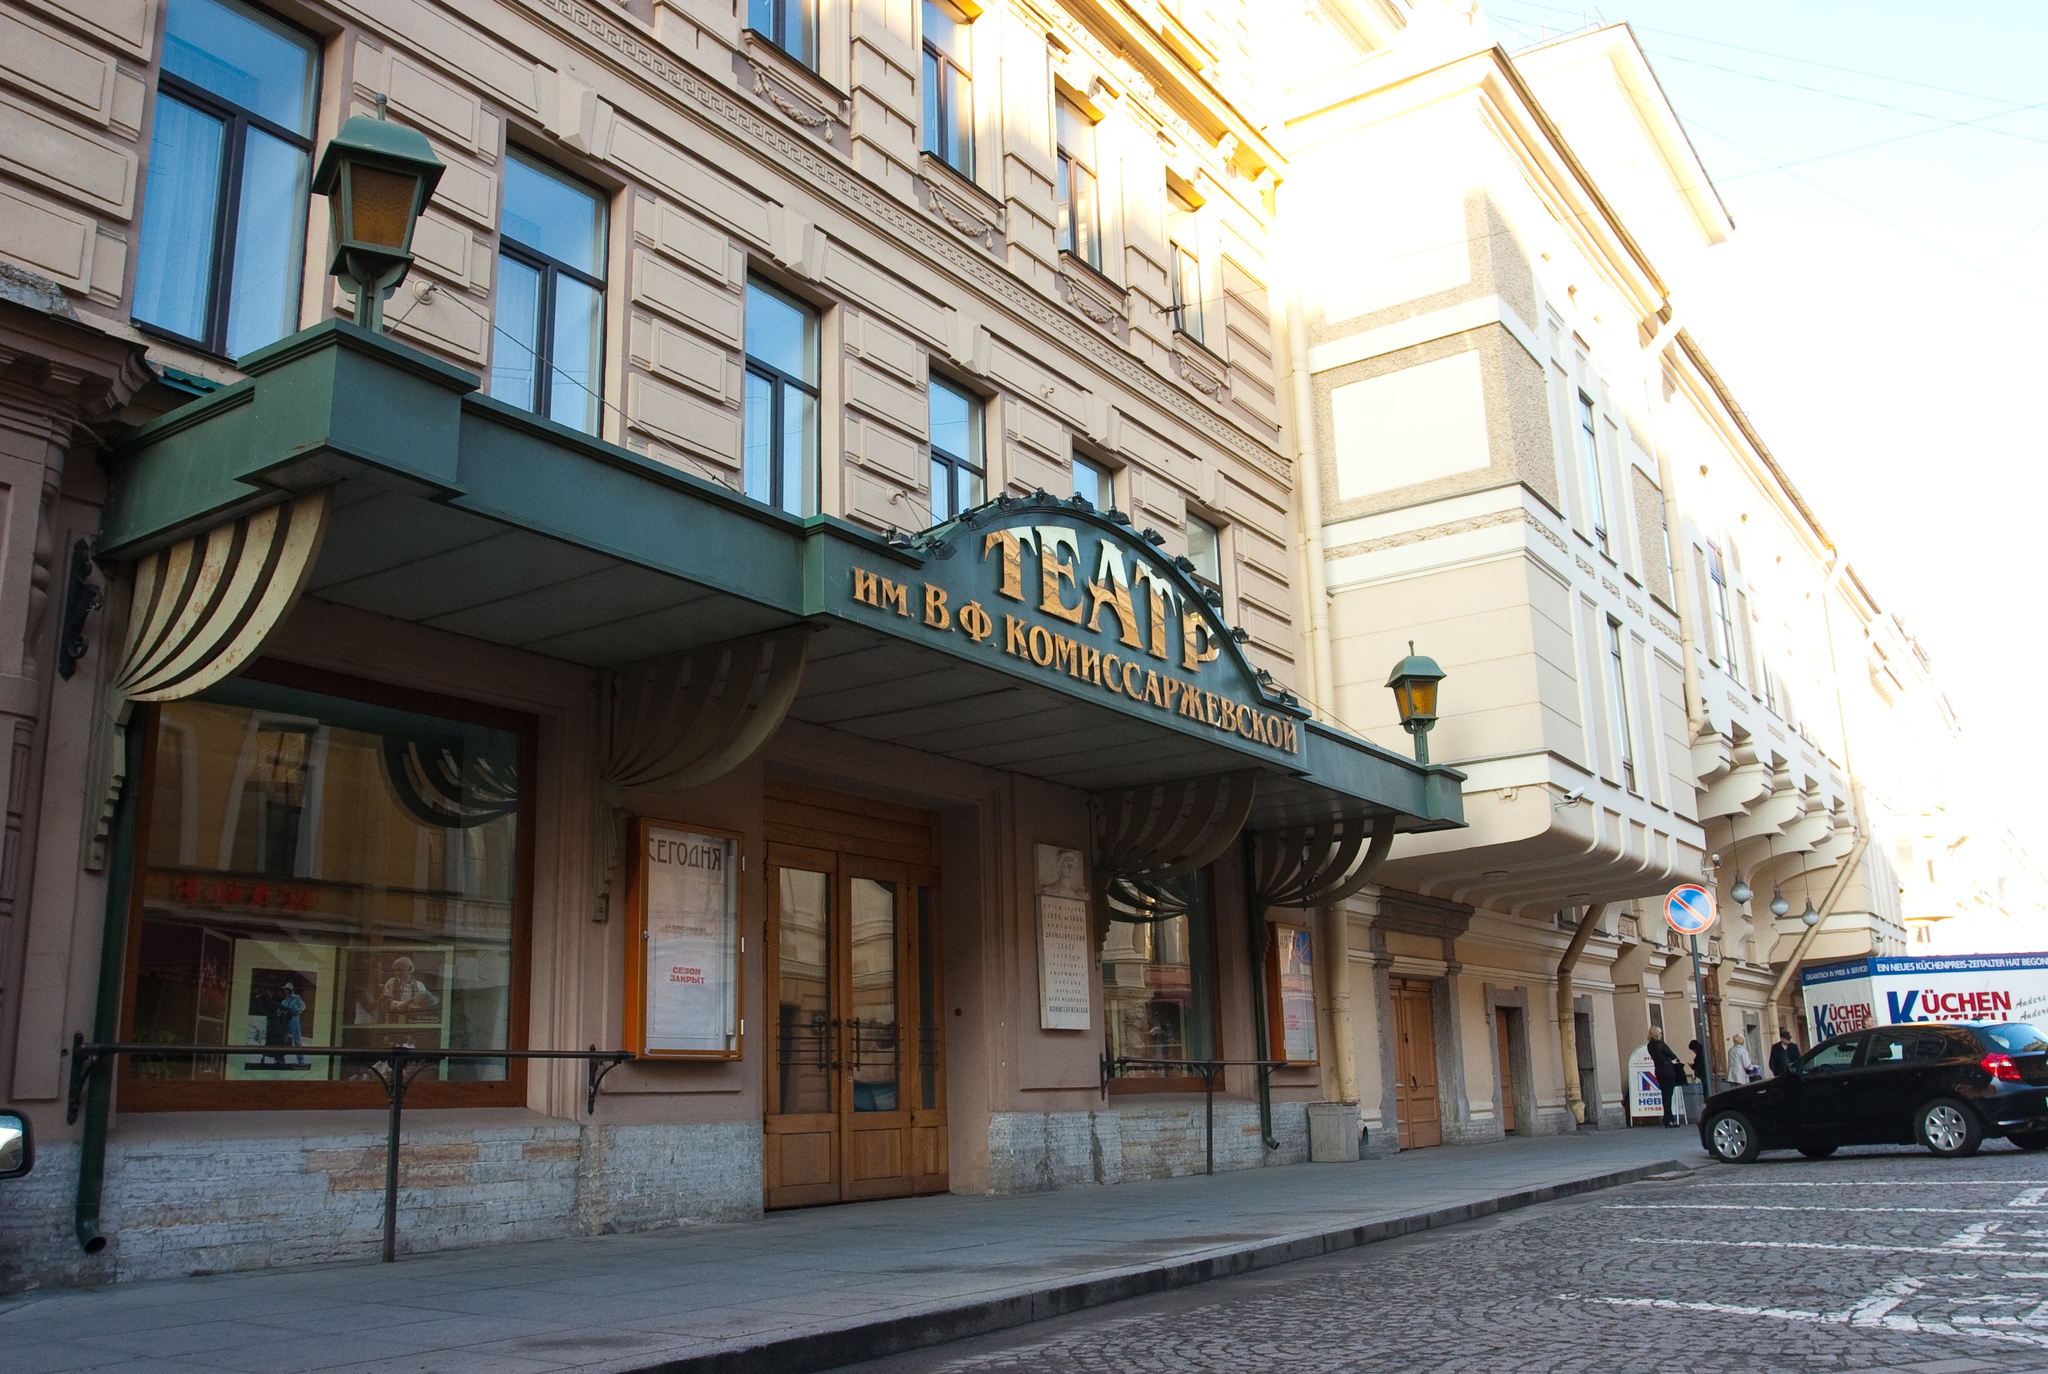 Театр комиссаржевской санкт петербург